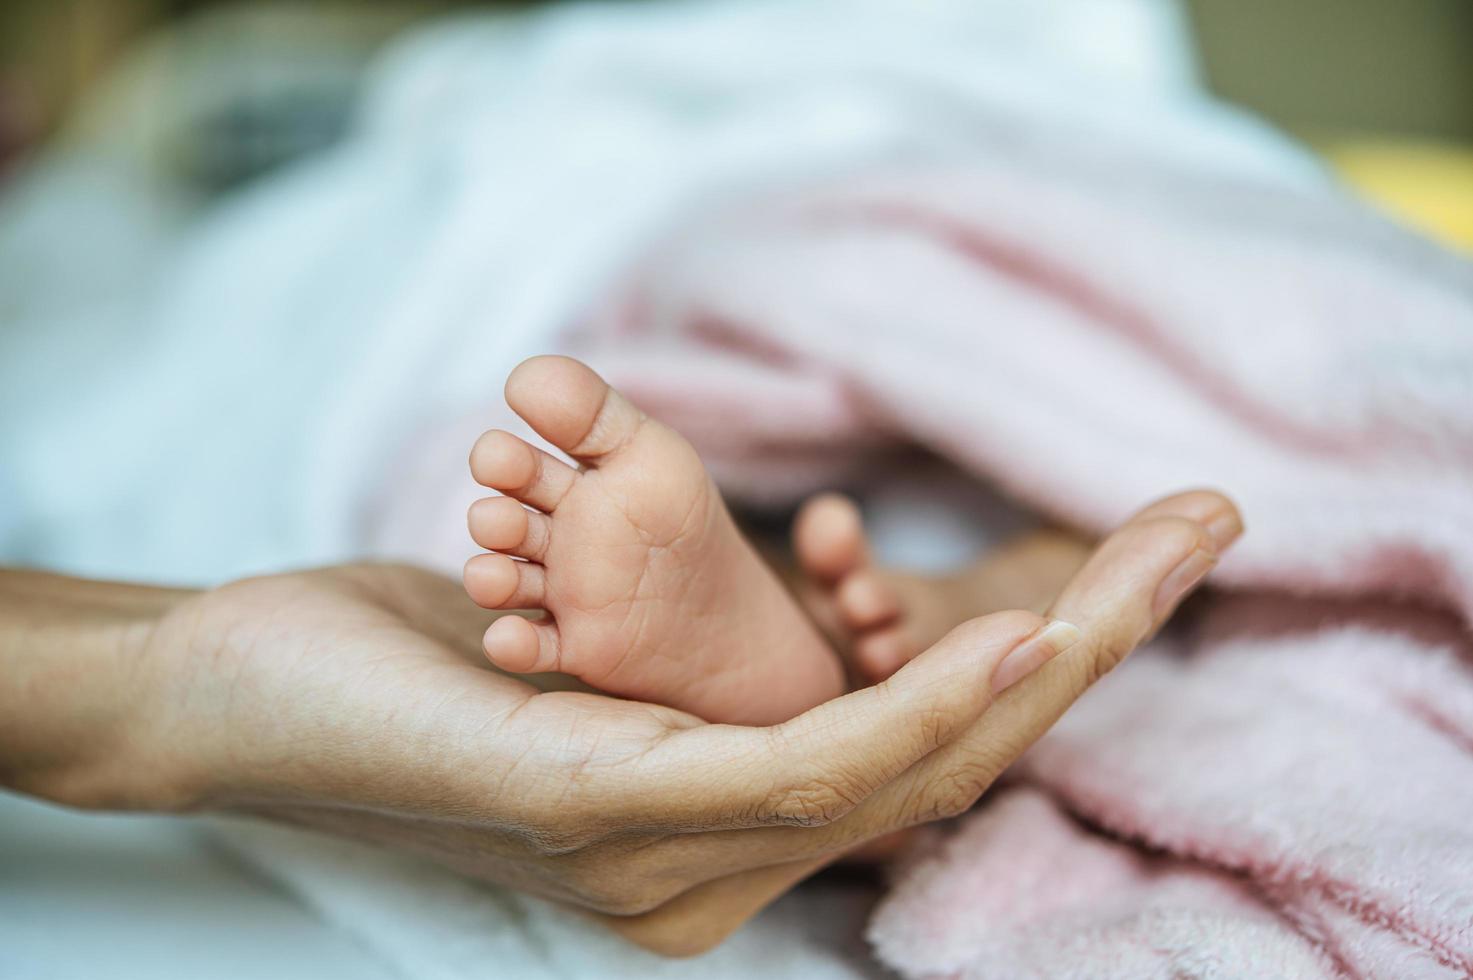 Pieds de bébé nouveau-né sur la main de la mère photo